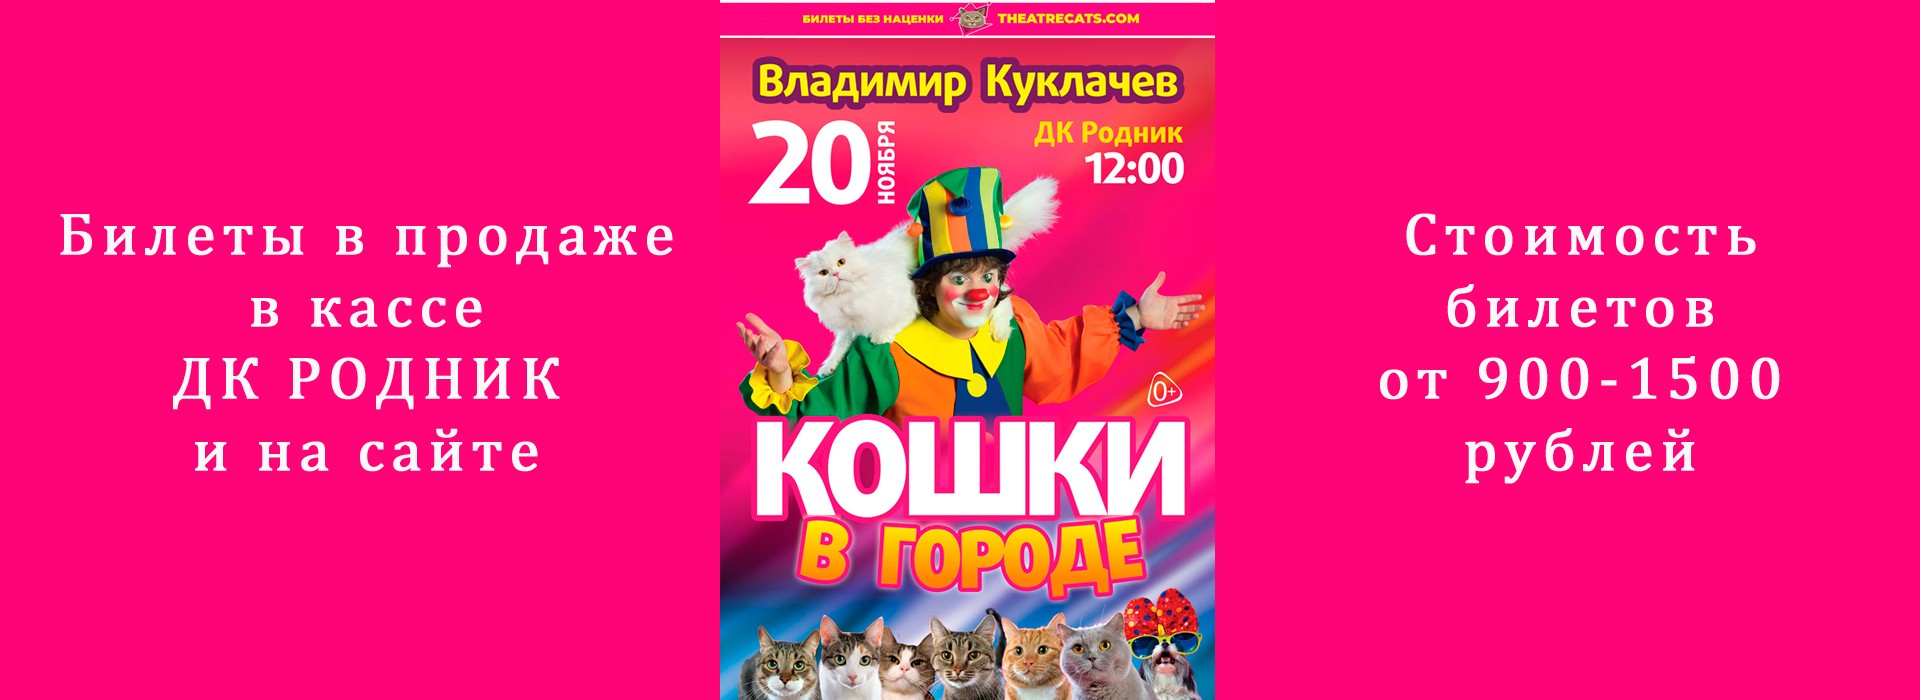 Шоу Владимира Куклачёва «Кошки в городе»